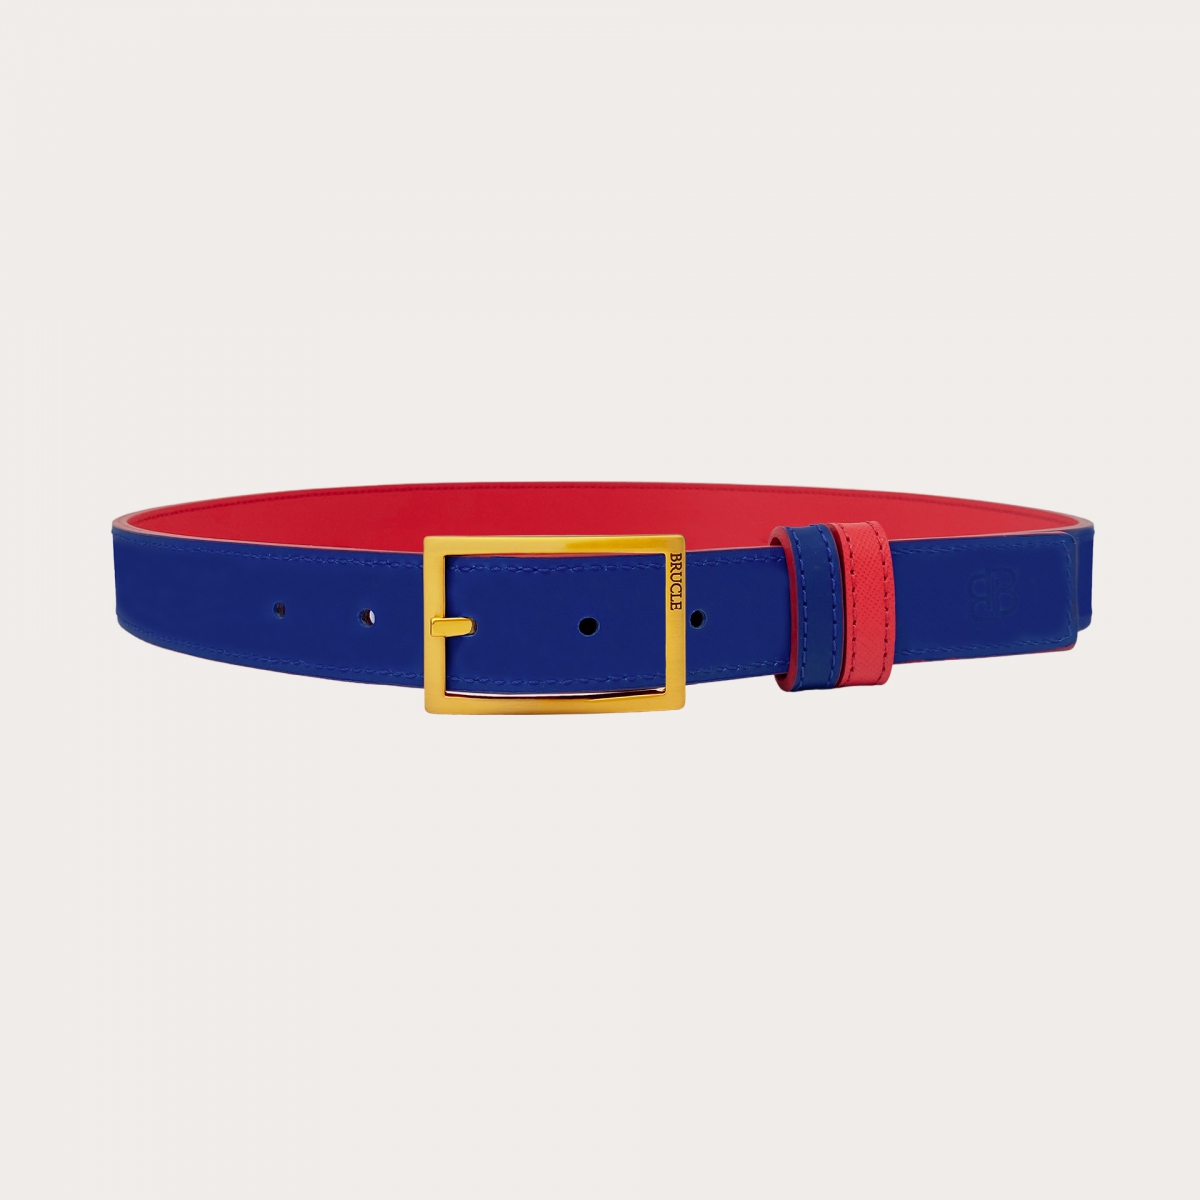 Cinturón reversible en Saffiano rojo y piel azul real